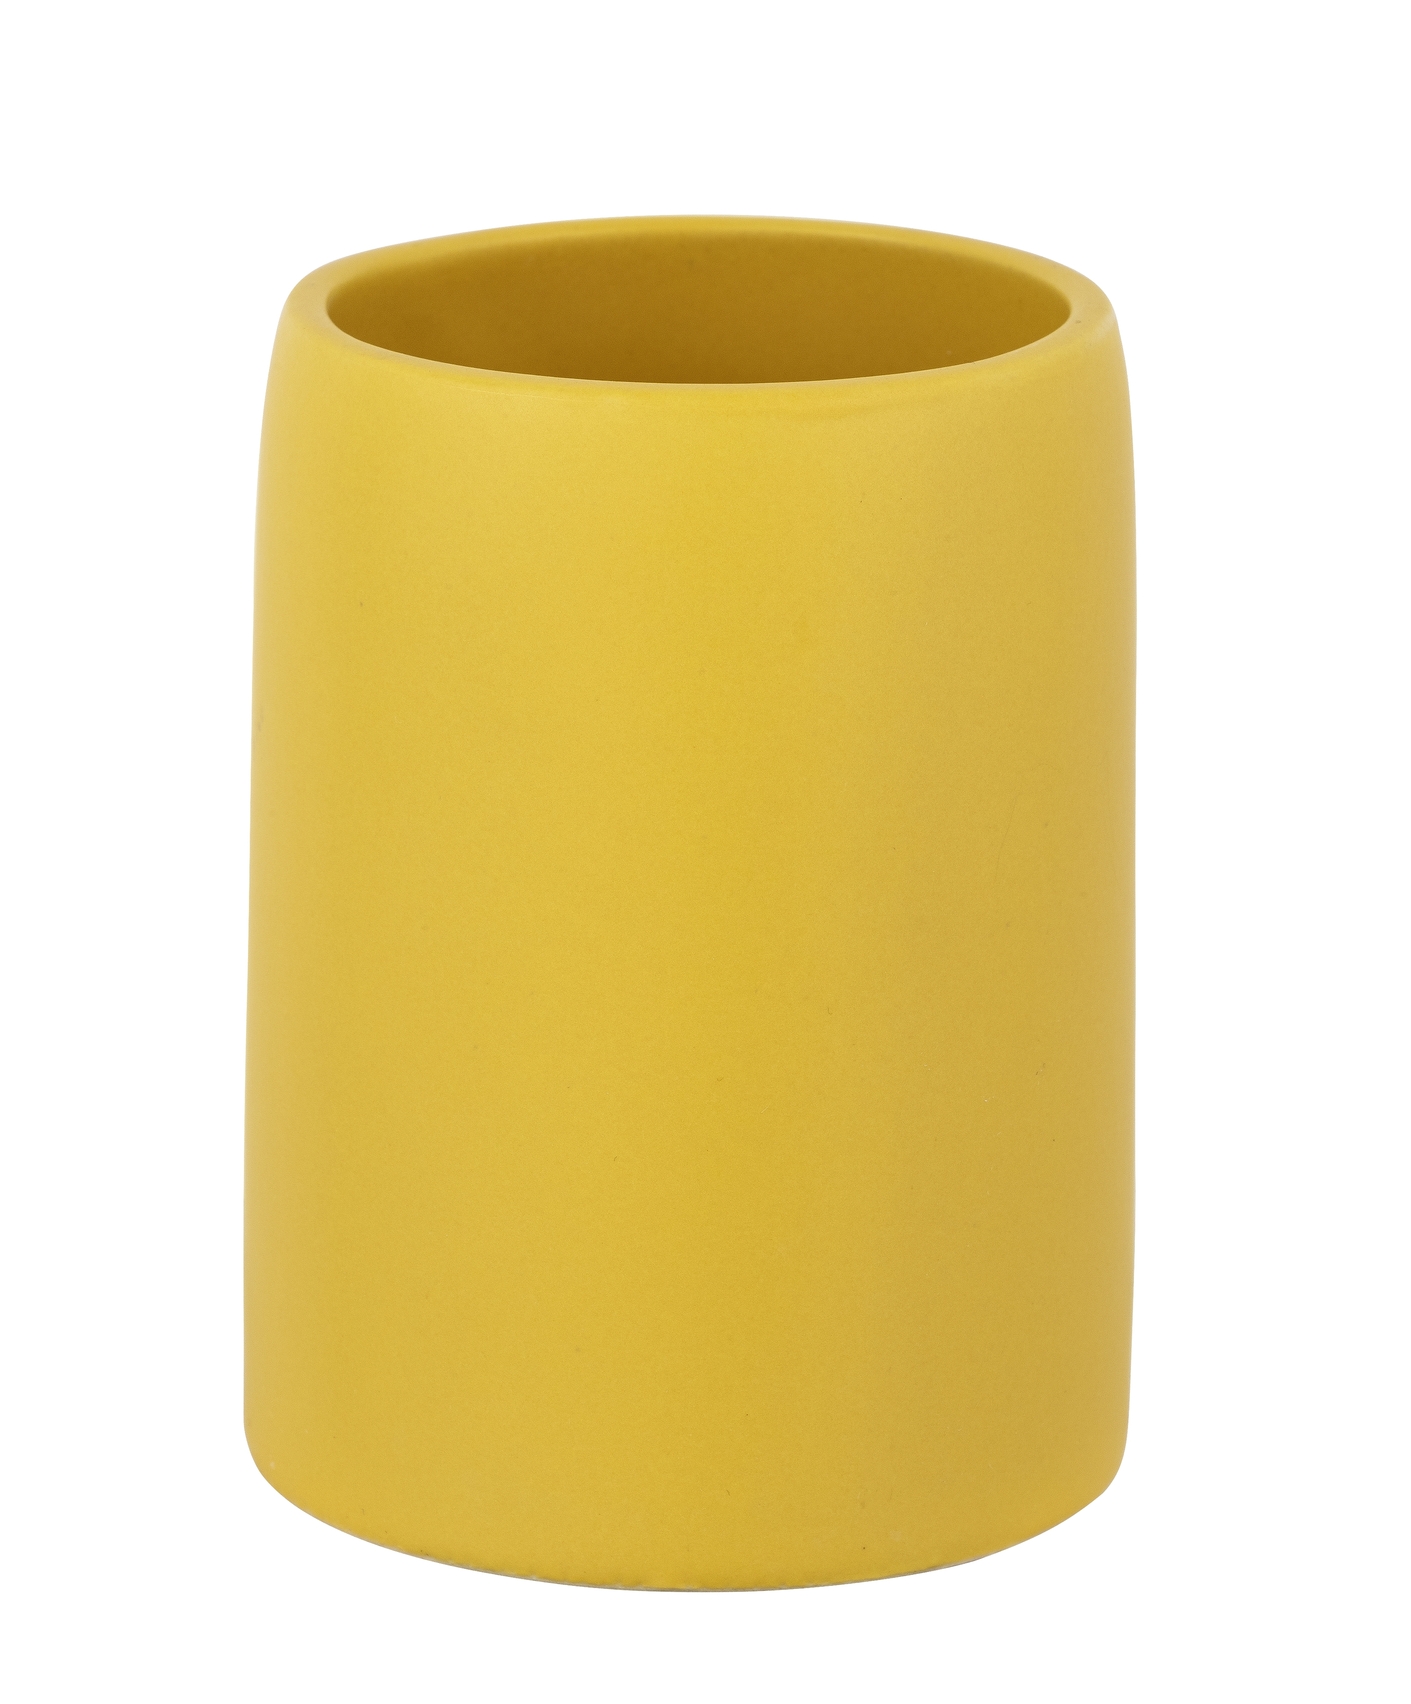 Schöner Wohnen Keramik Zahnputzbecher Funo, gelb